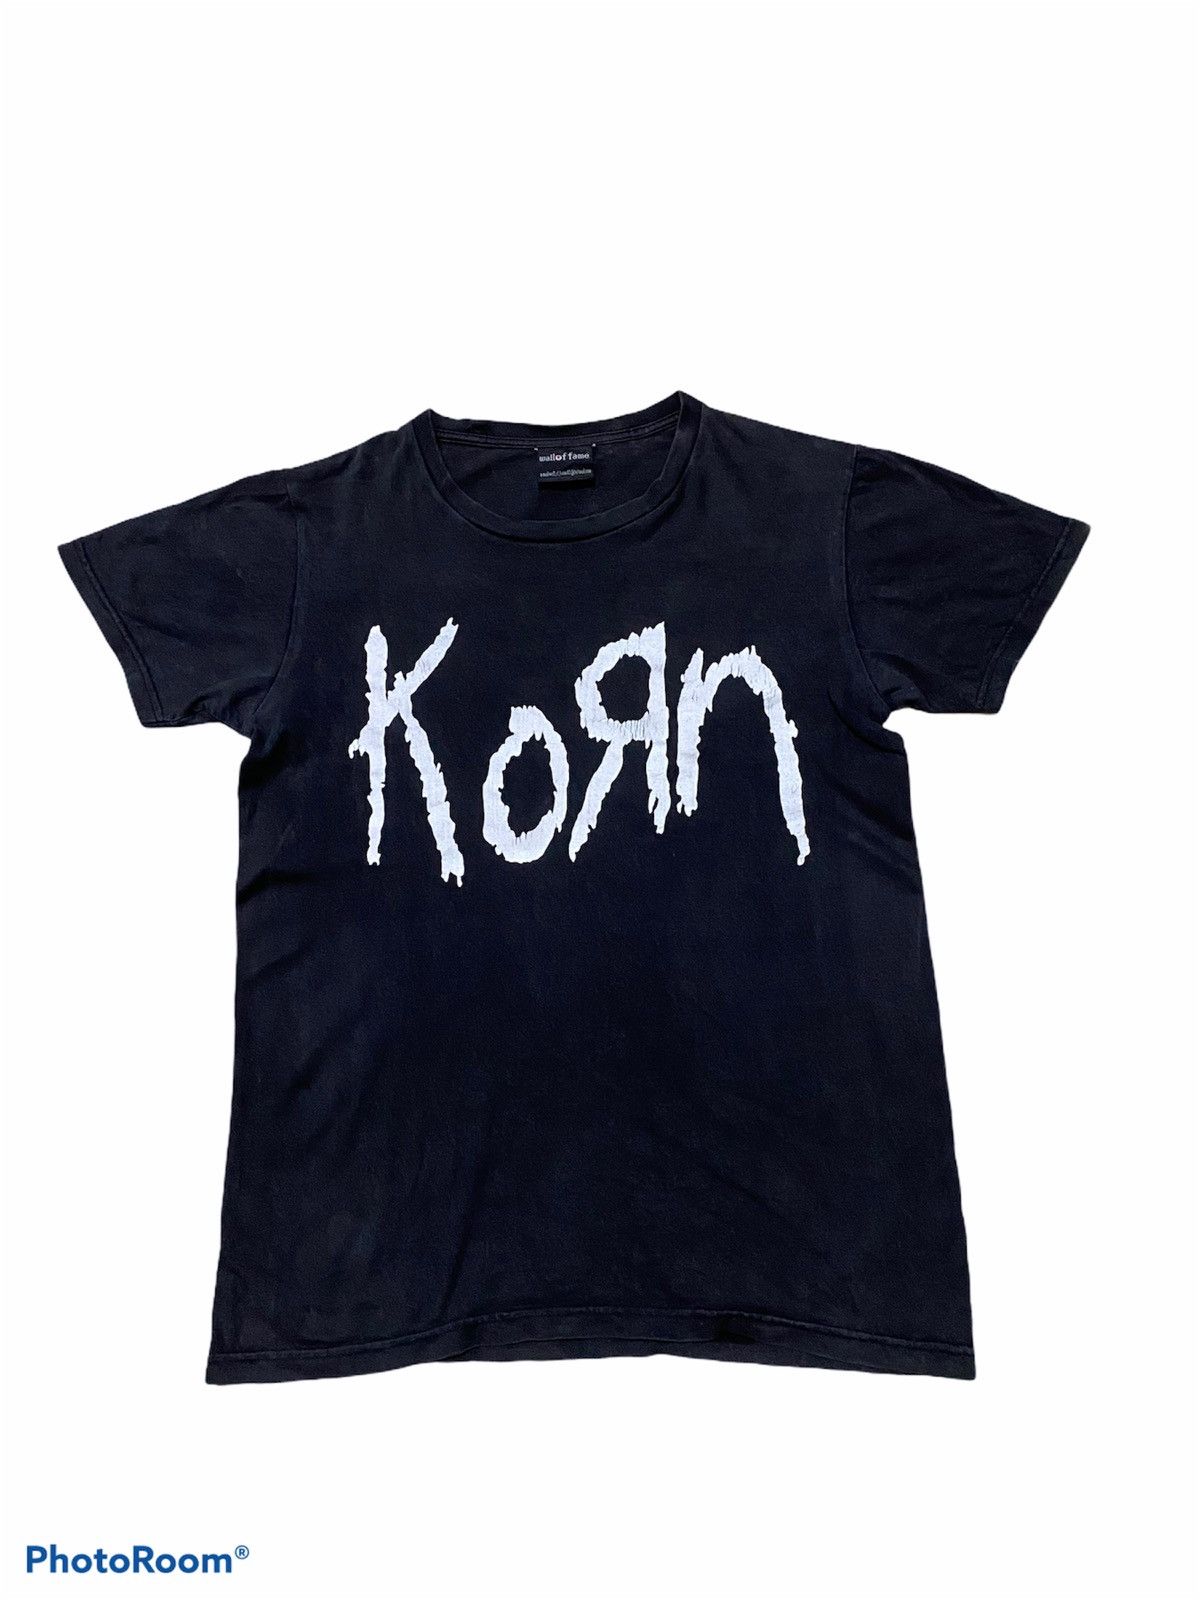 Vintage Rare Korn T-shirt Size US S / EU 44-46 / 1 - 2 Preview